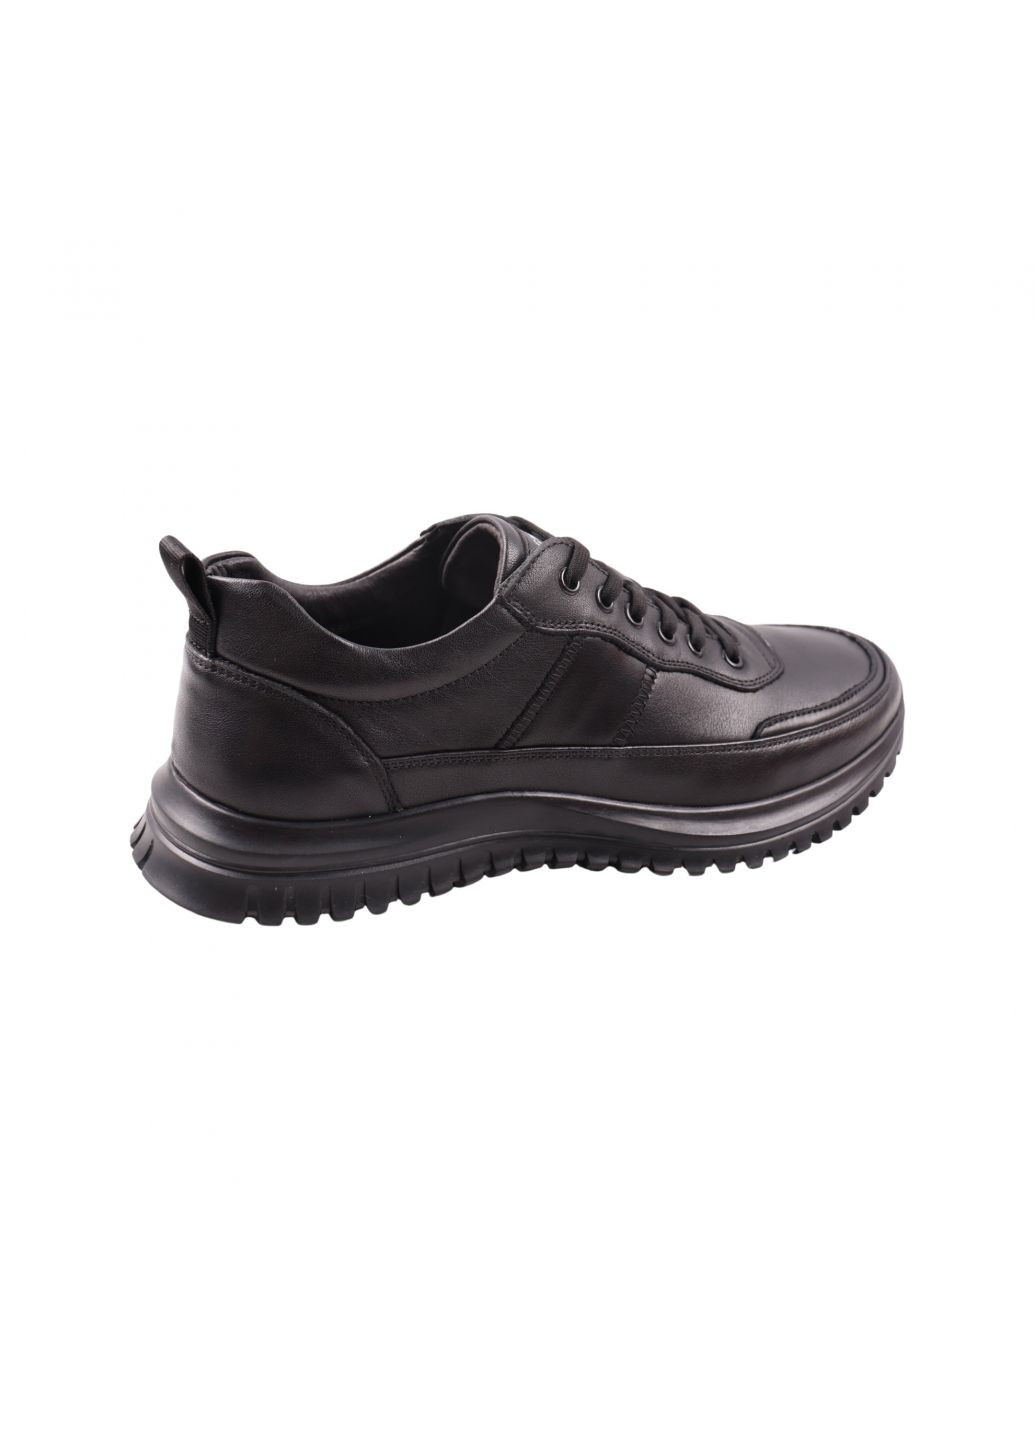 Черные кроссовки мужские черные натуральная кожа Lifexpert 1375-23DTS